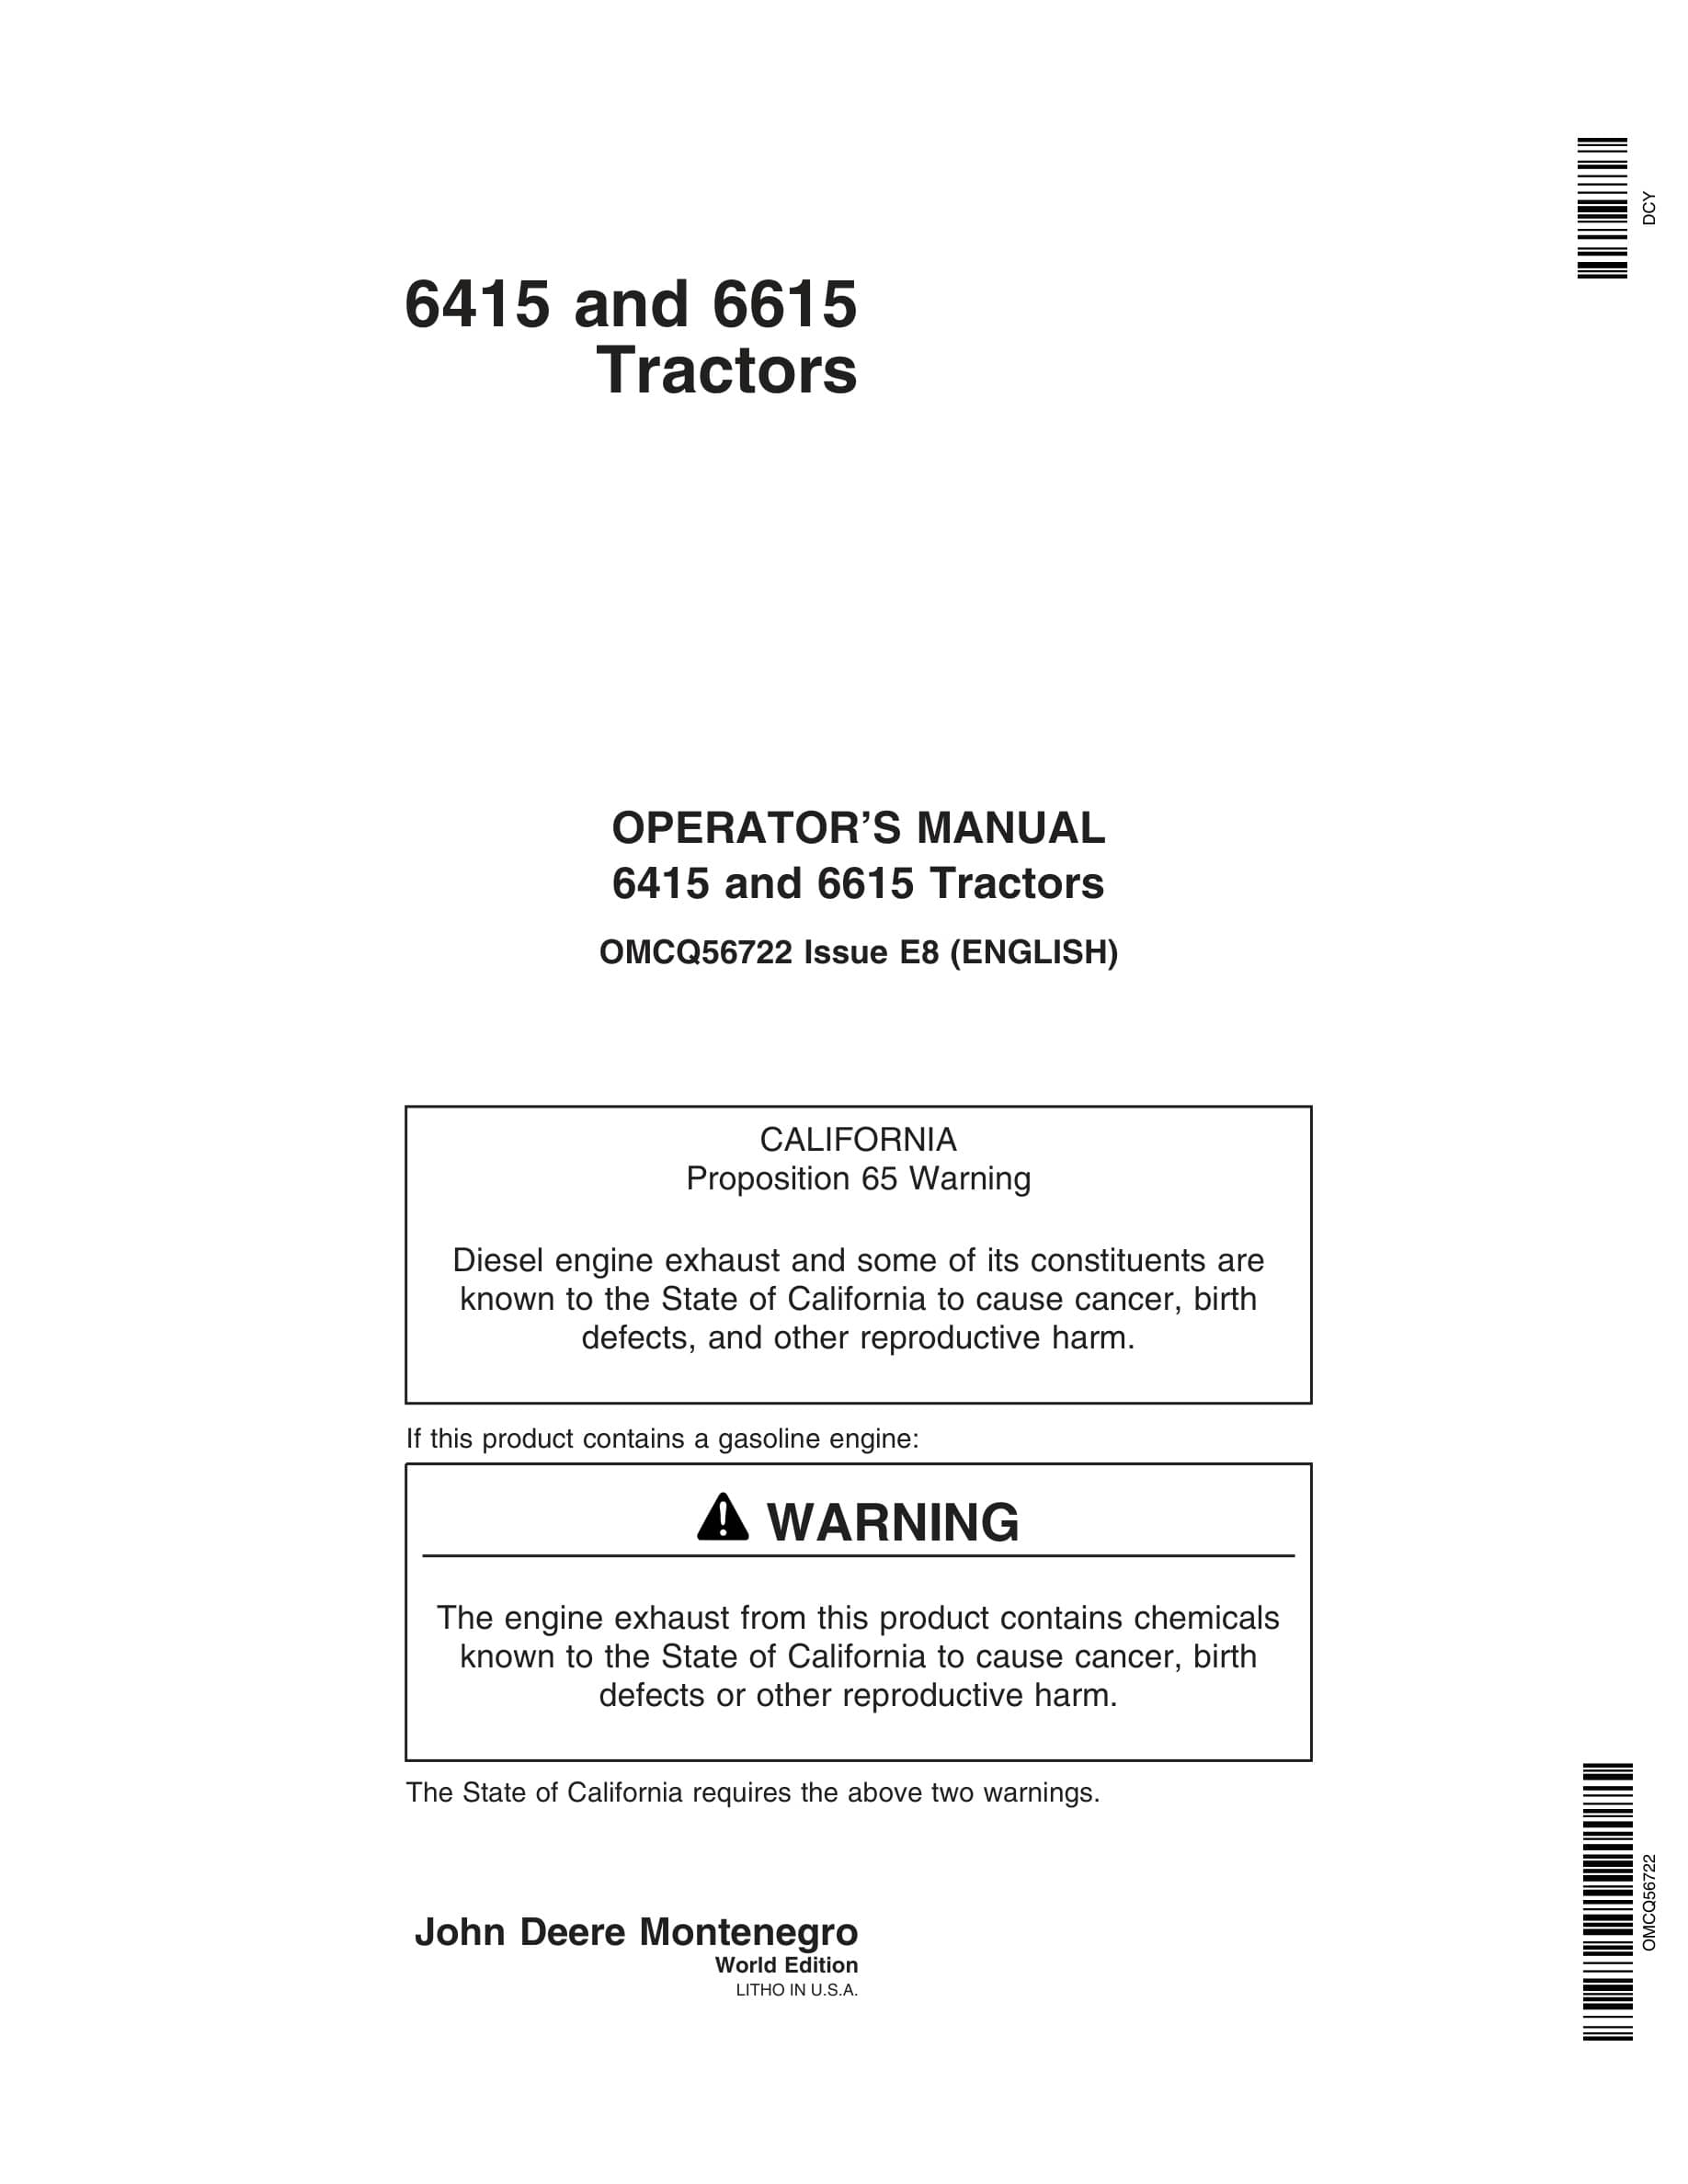 John Deere 6415 And 6615 Tractors Operator Manuals OMCQ56722-1